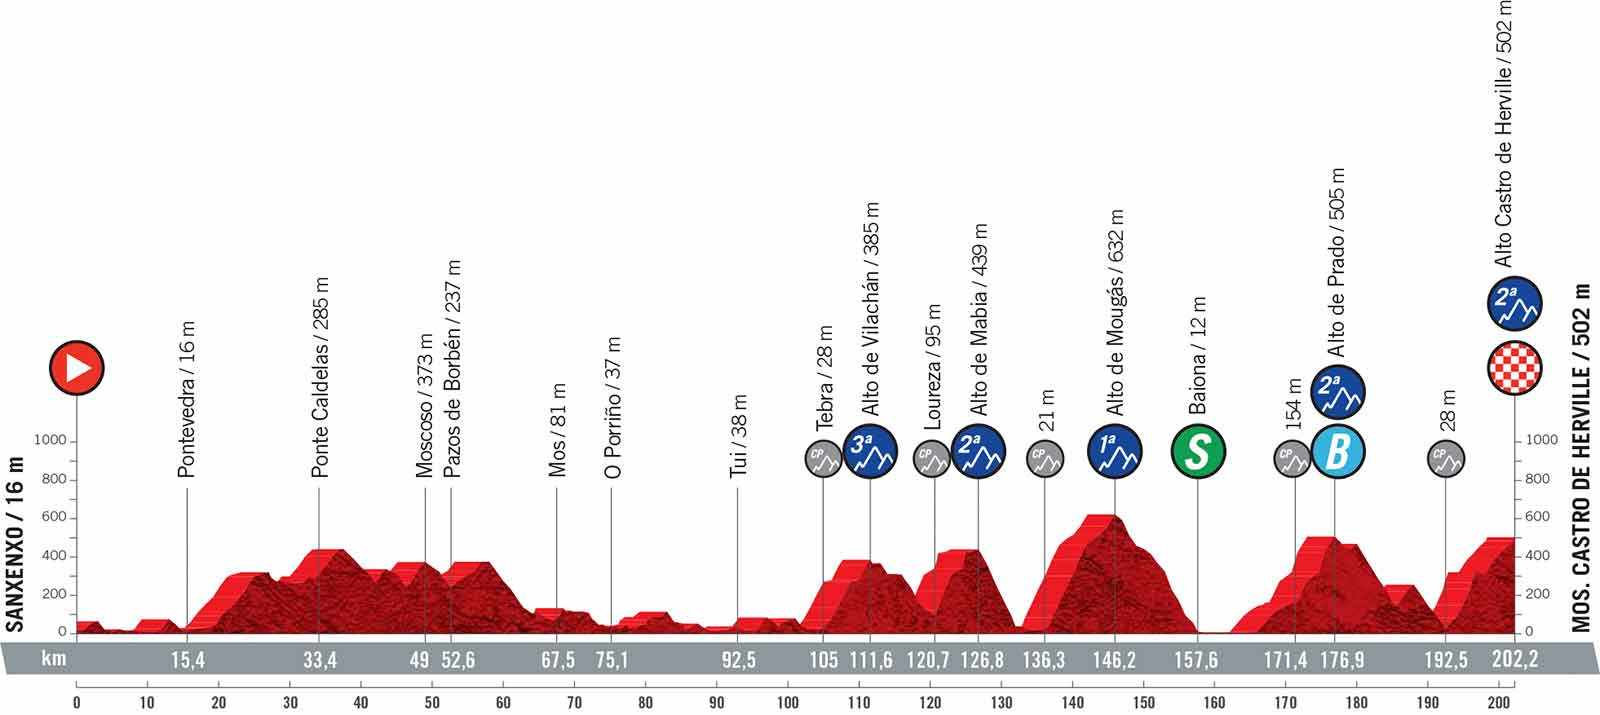 Die weiteren Etappen der Vuelta 2021